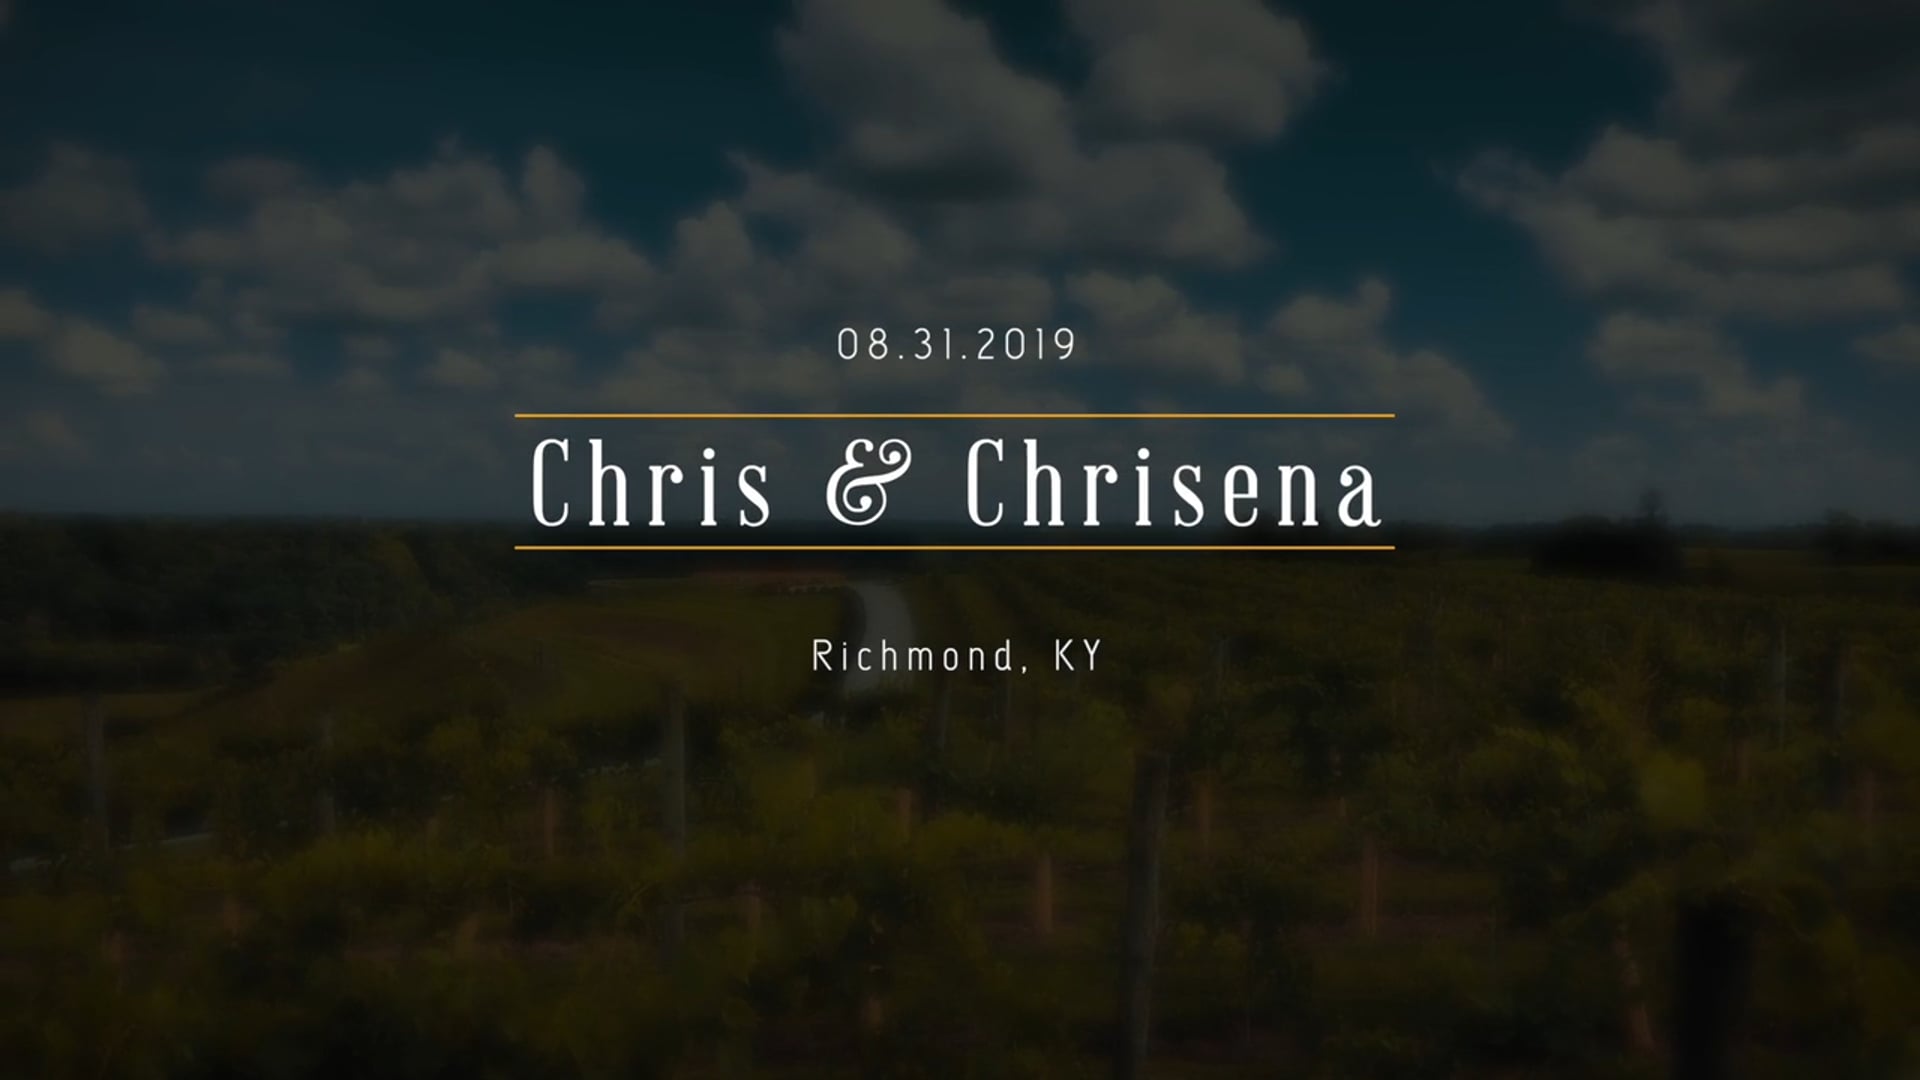 Chris and Chrisena